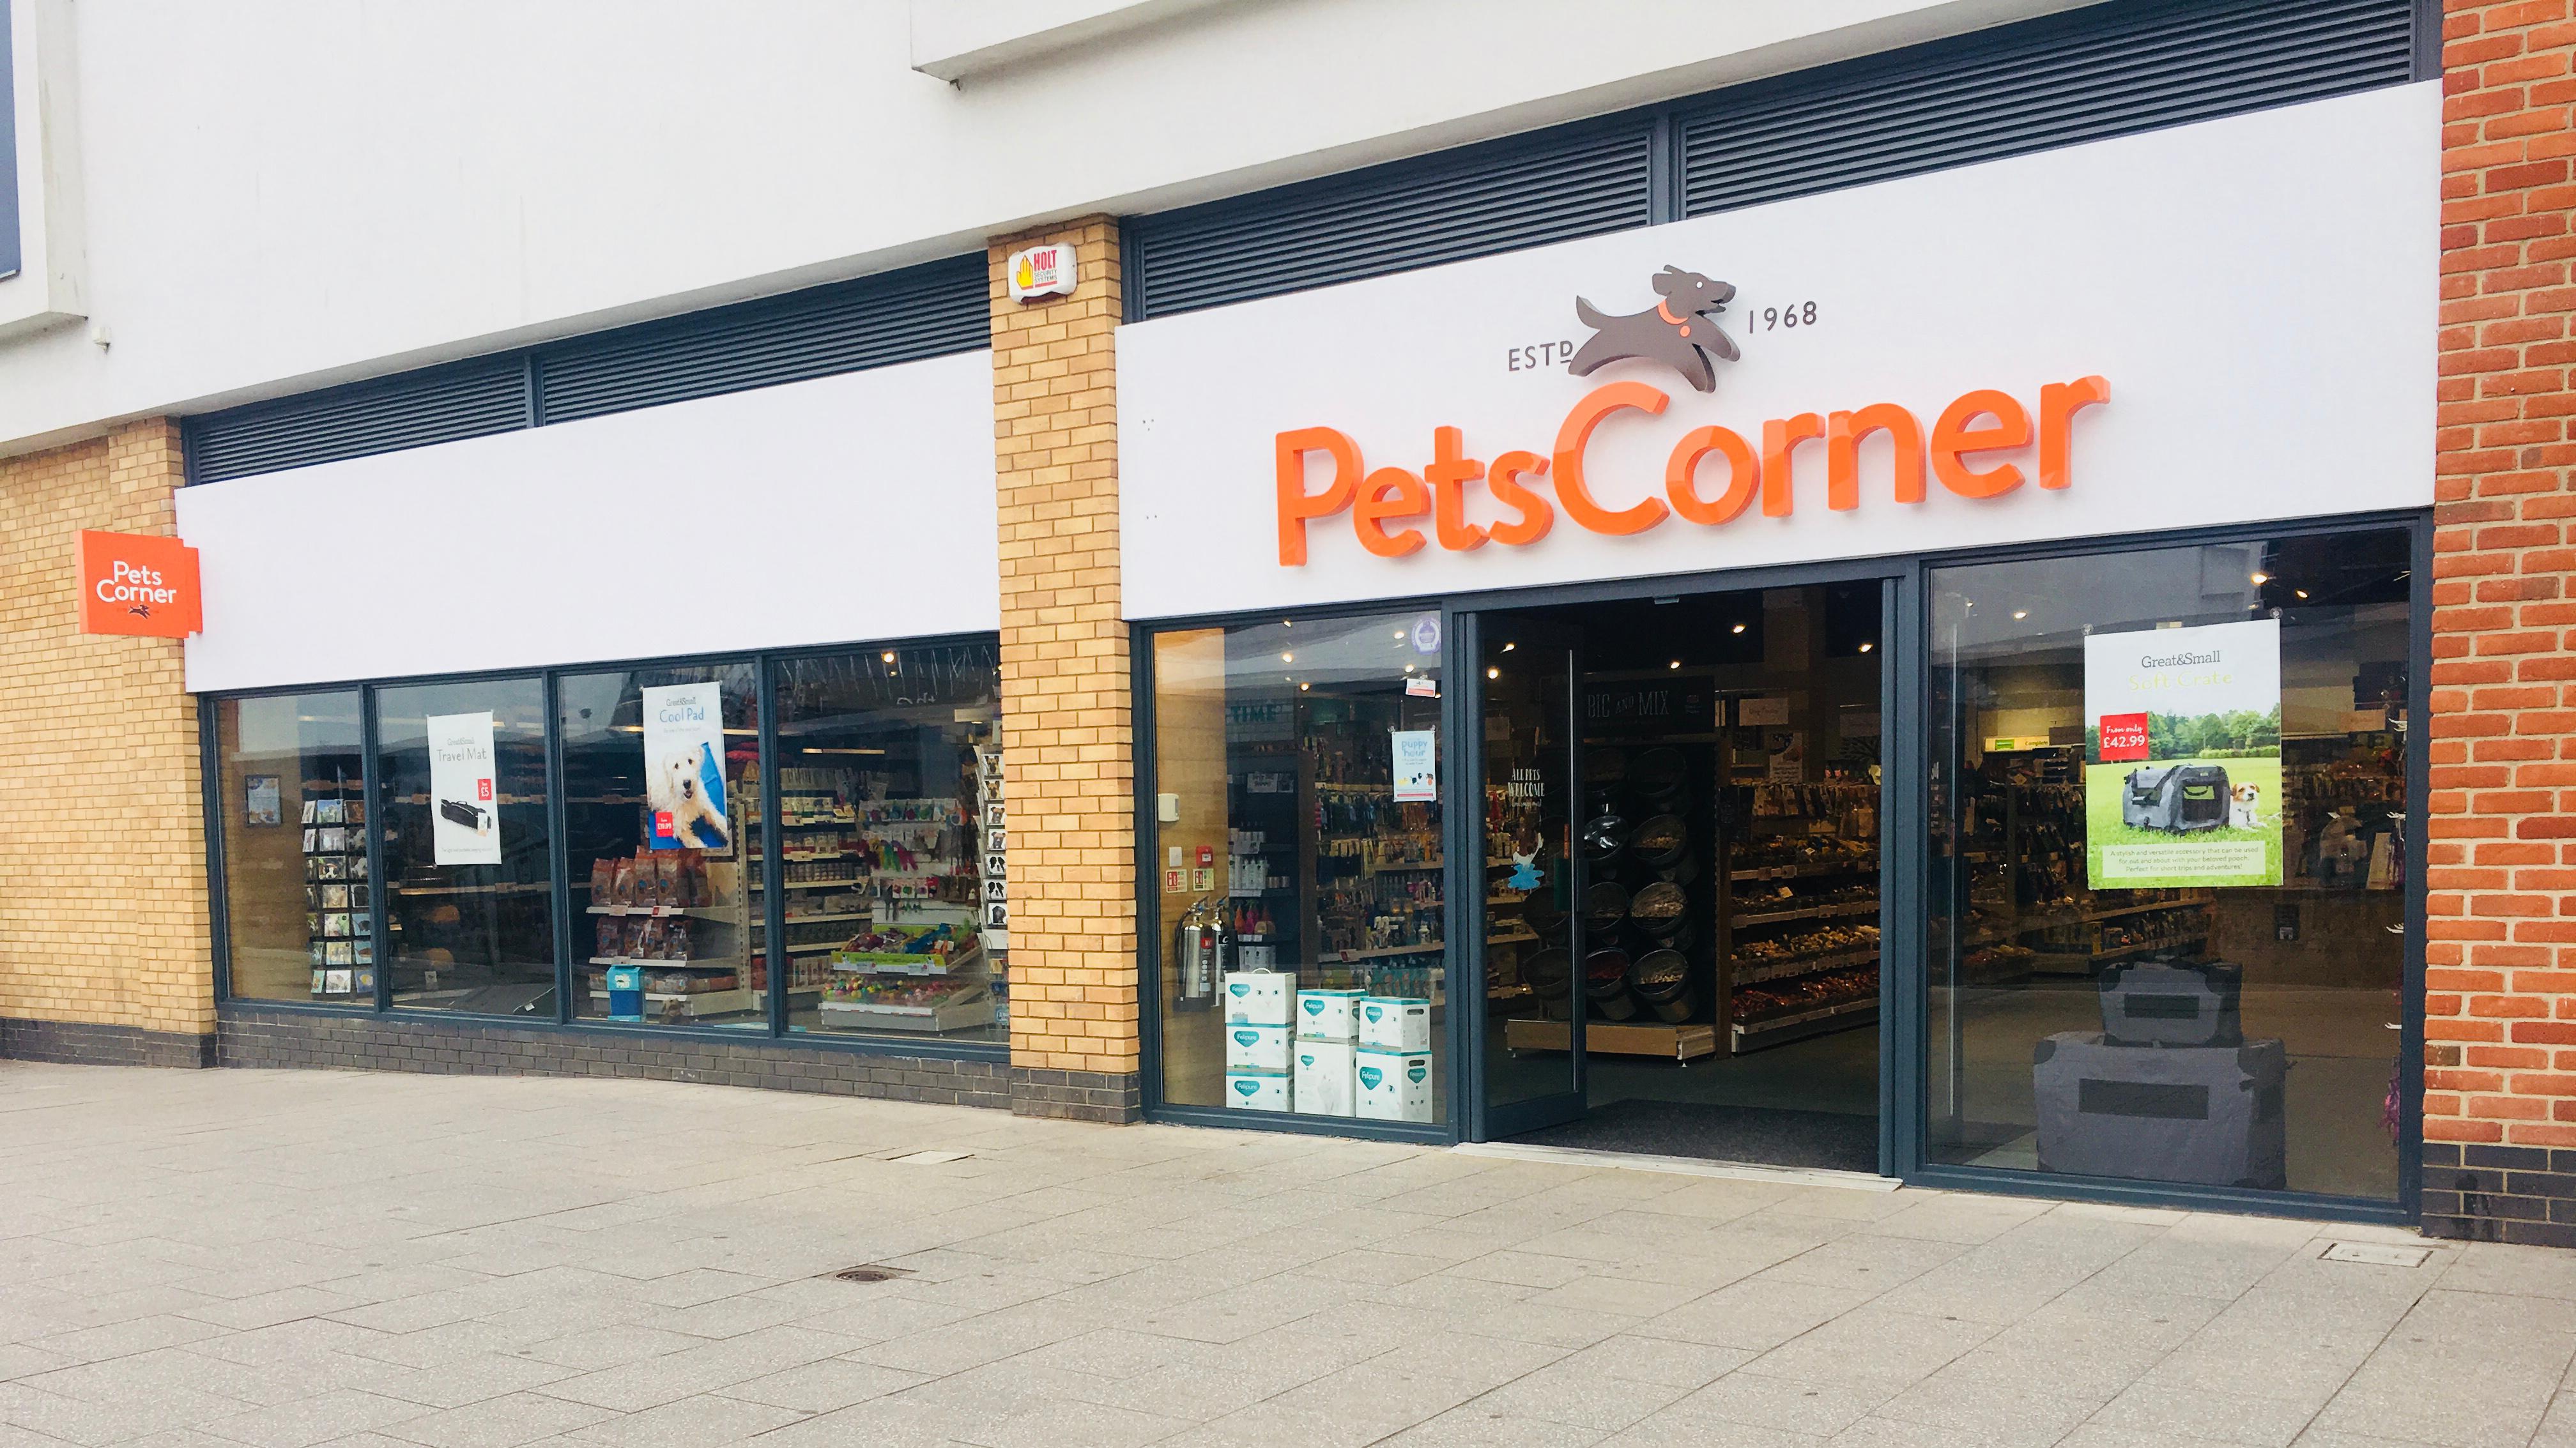 Pet corner. Зоомагазины в Англии. Pet shop магазин для животных в Англии. Магазины для животных в Англии. Пет Корнер.